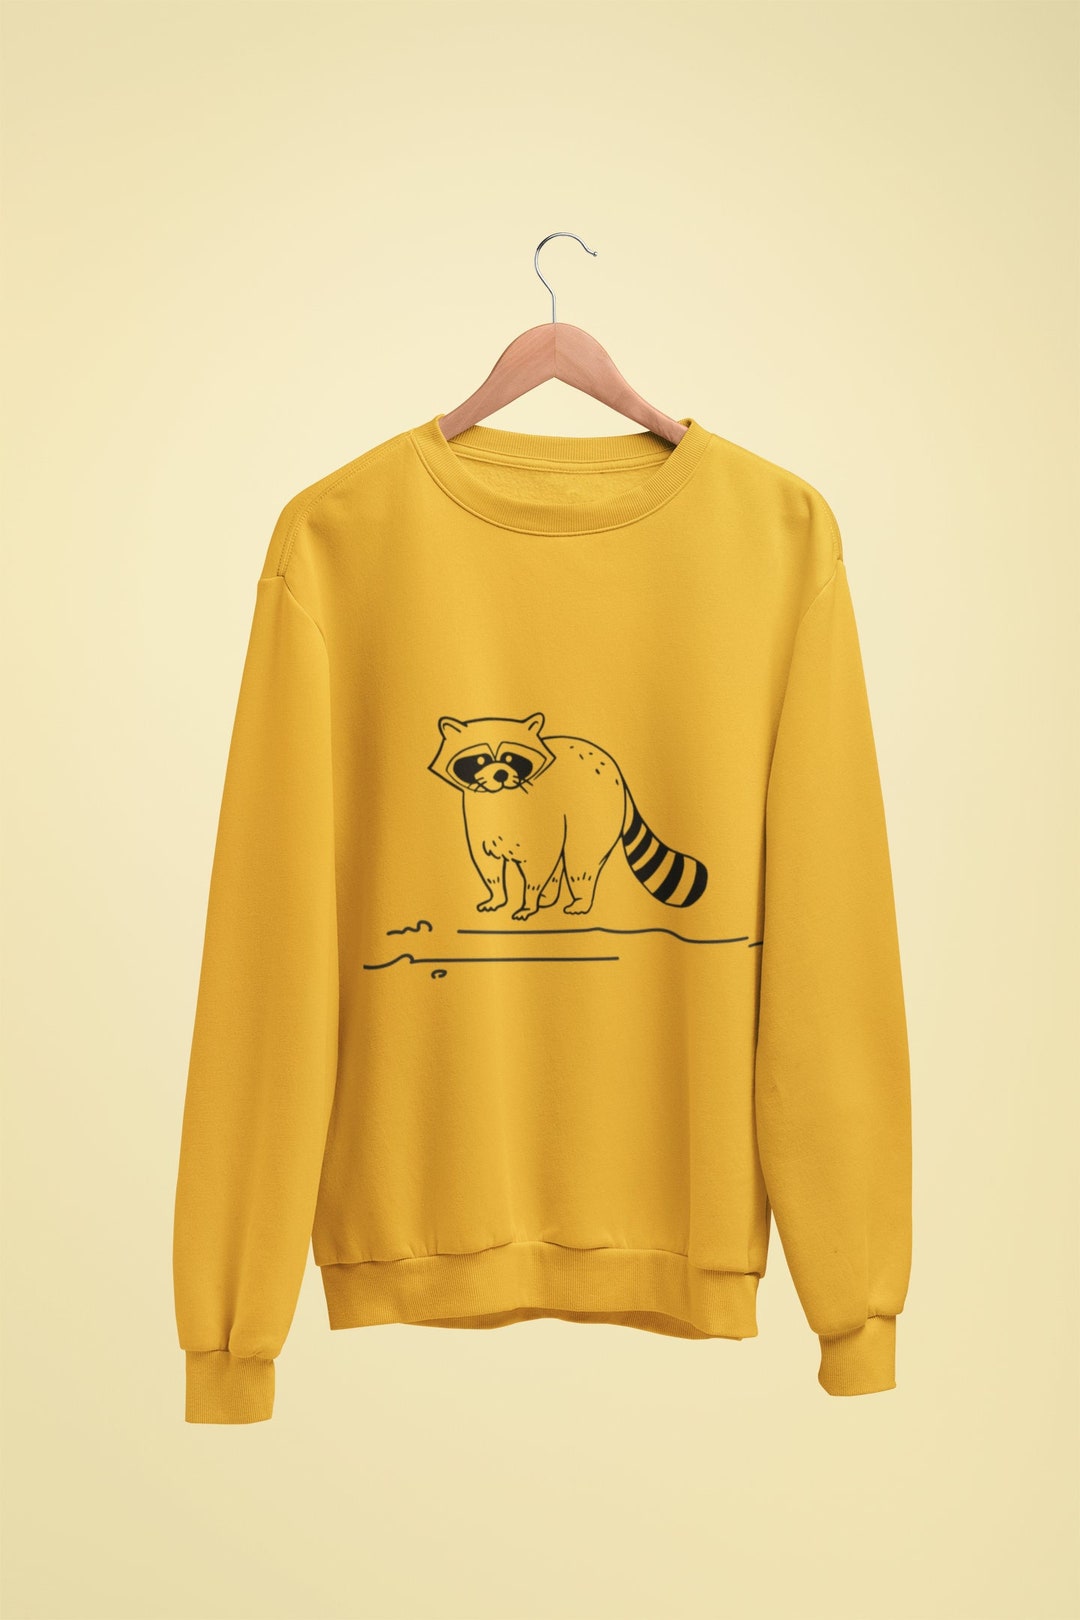 Raccoon Sweatshirt, Cute Raccoon Sweater, Raccoon Graphic Shirt, Funny ...